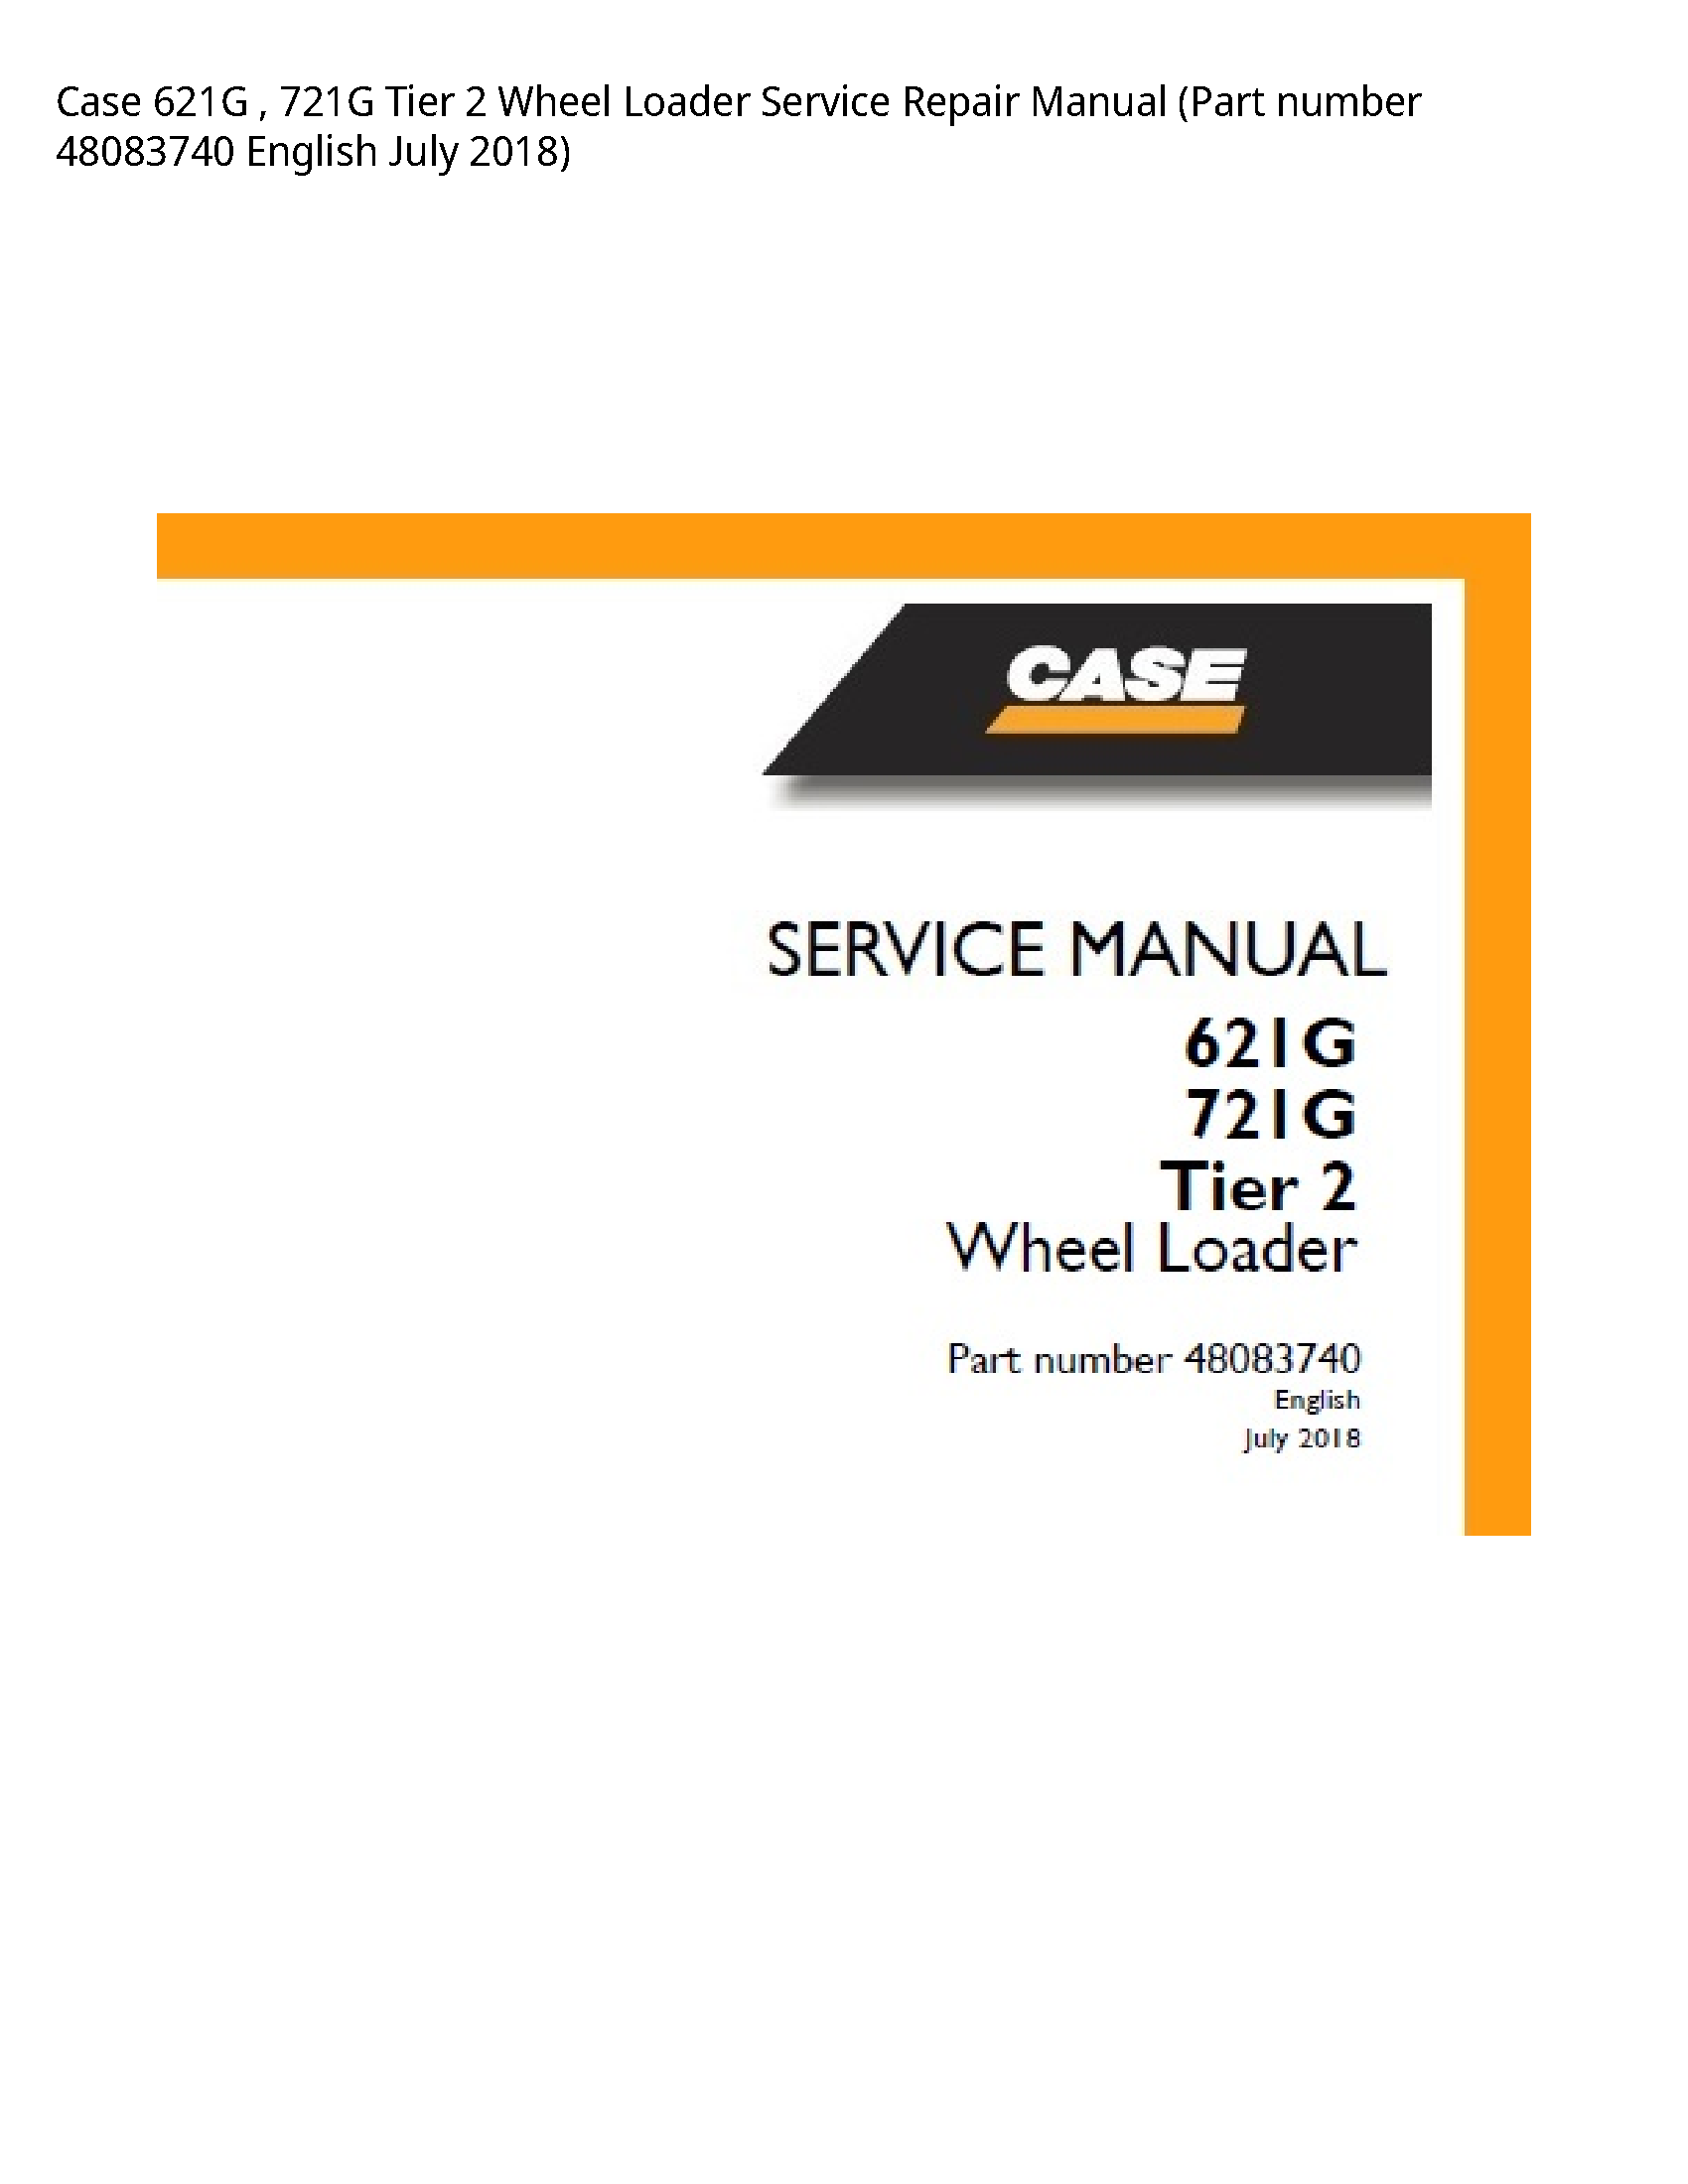 Case/Case IH 621G Tier Wheel Loader manual